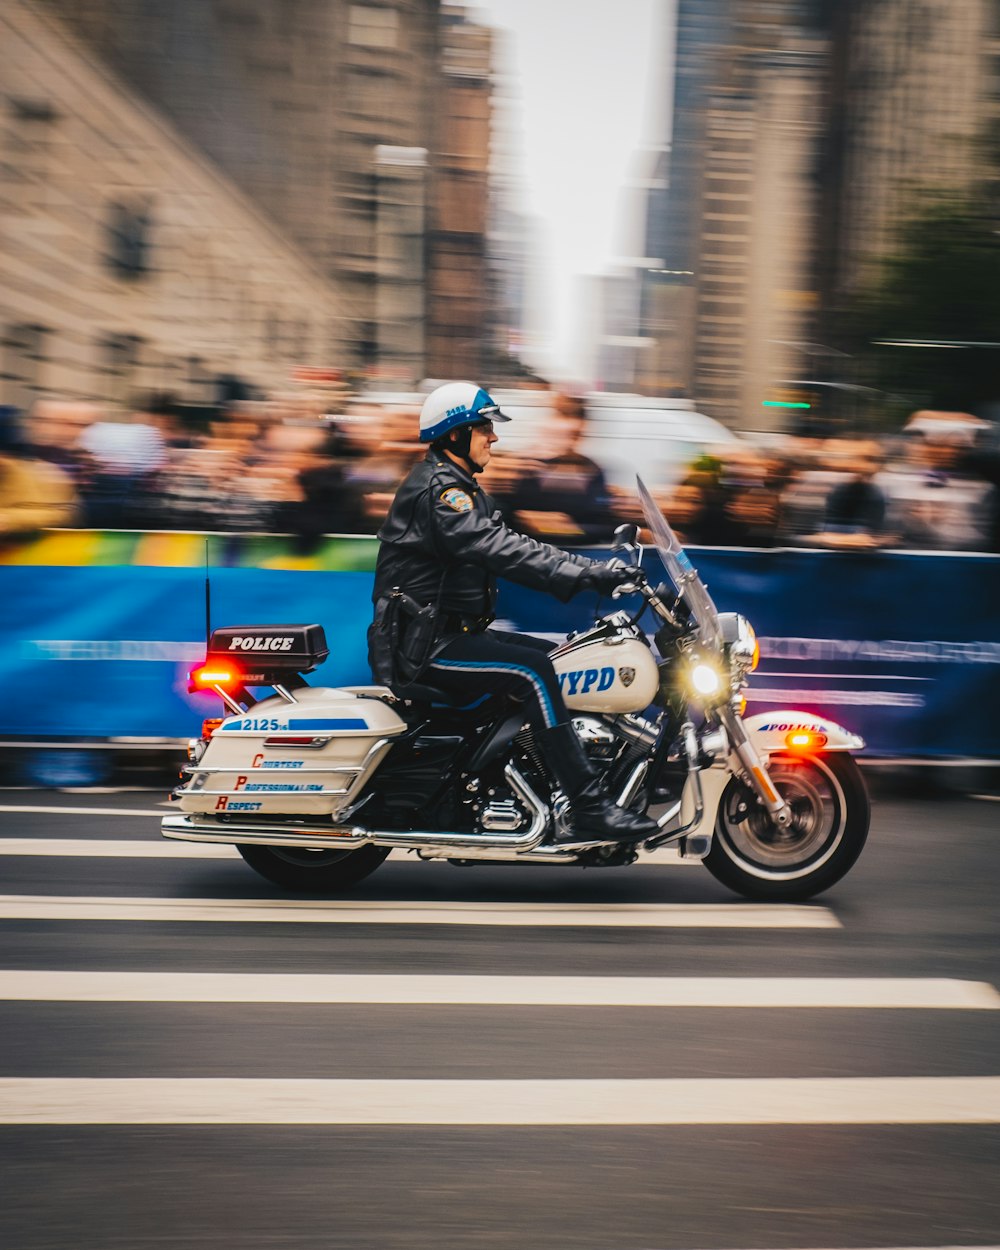 Policía montado en motocicleta blanca